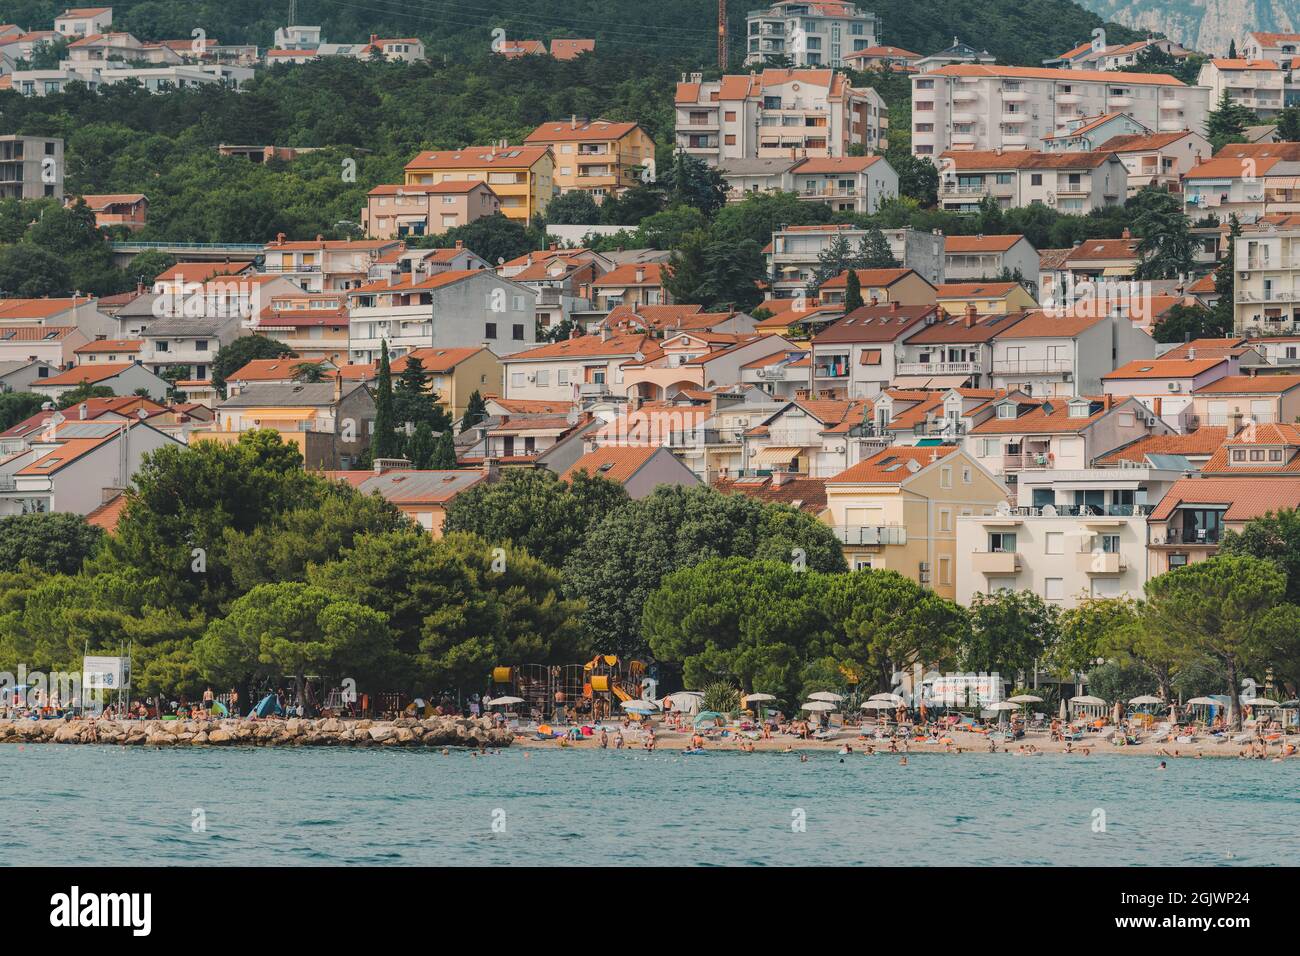 CRIKVENICA, KROATIEN - 26. Juli 2021: Stadt Crikvenica in der Kvarner Bucht Bereich der kroatischen Teil der Adria vom touristischen Boot aus gesehen Stockfoto